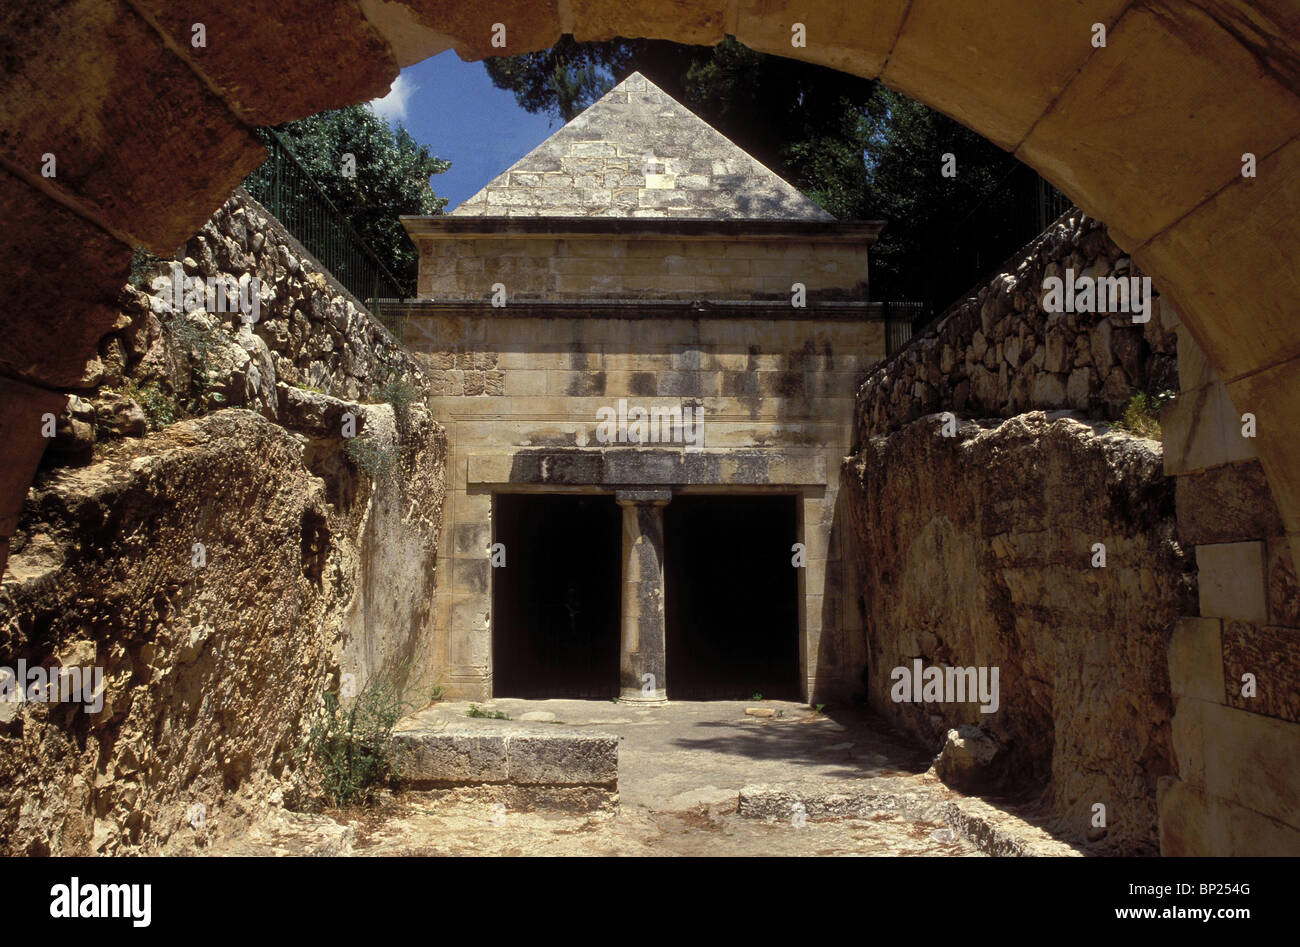 La tumba de Jason en Jerusalén, que data de la 1ª. C. A.C. JASON era el sumo sacerdote en el templo de Jerusalén en el 2ND. C. A.C. Foto de stock